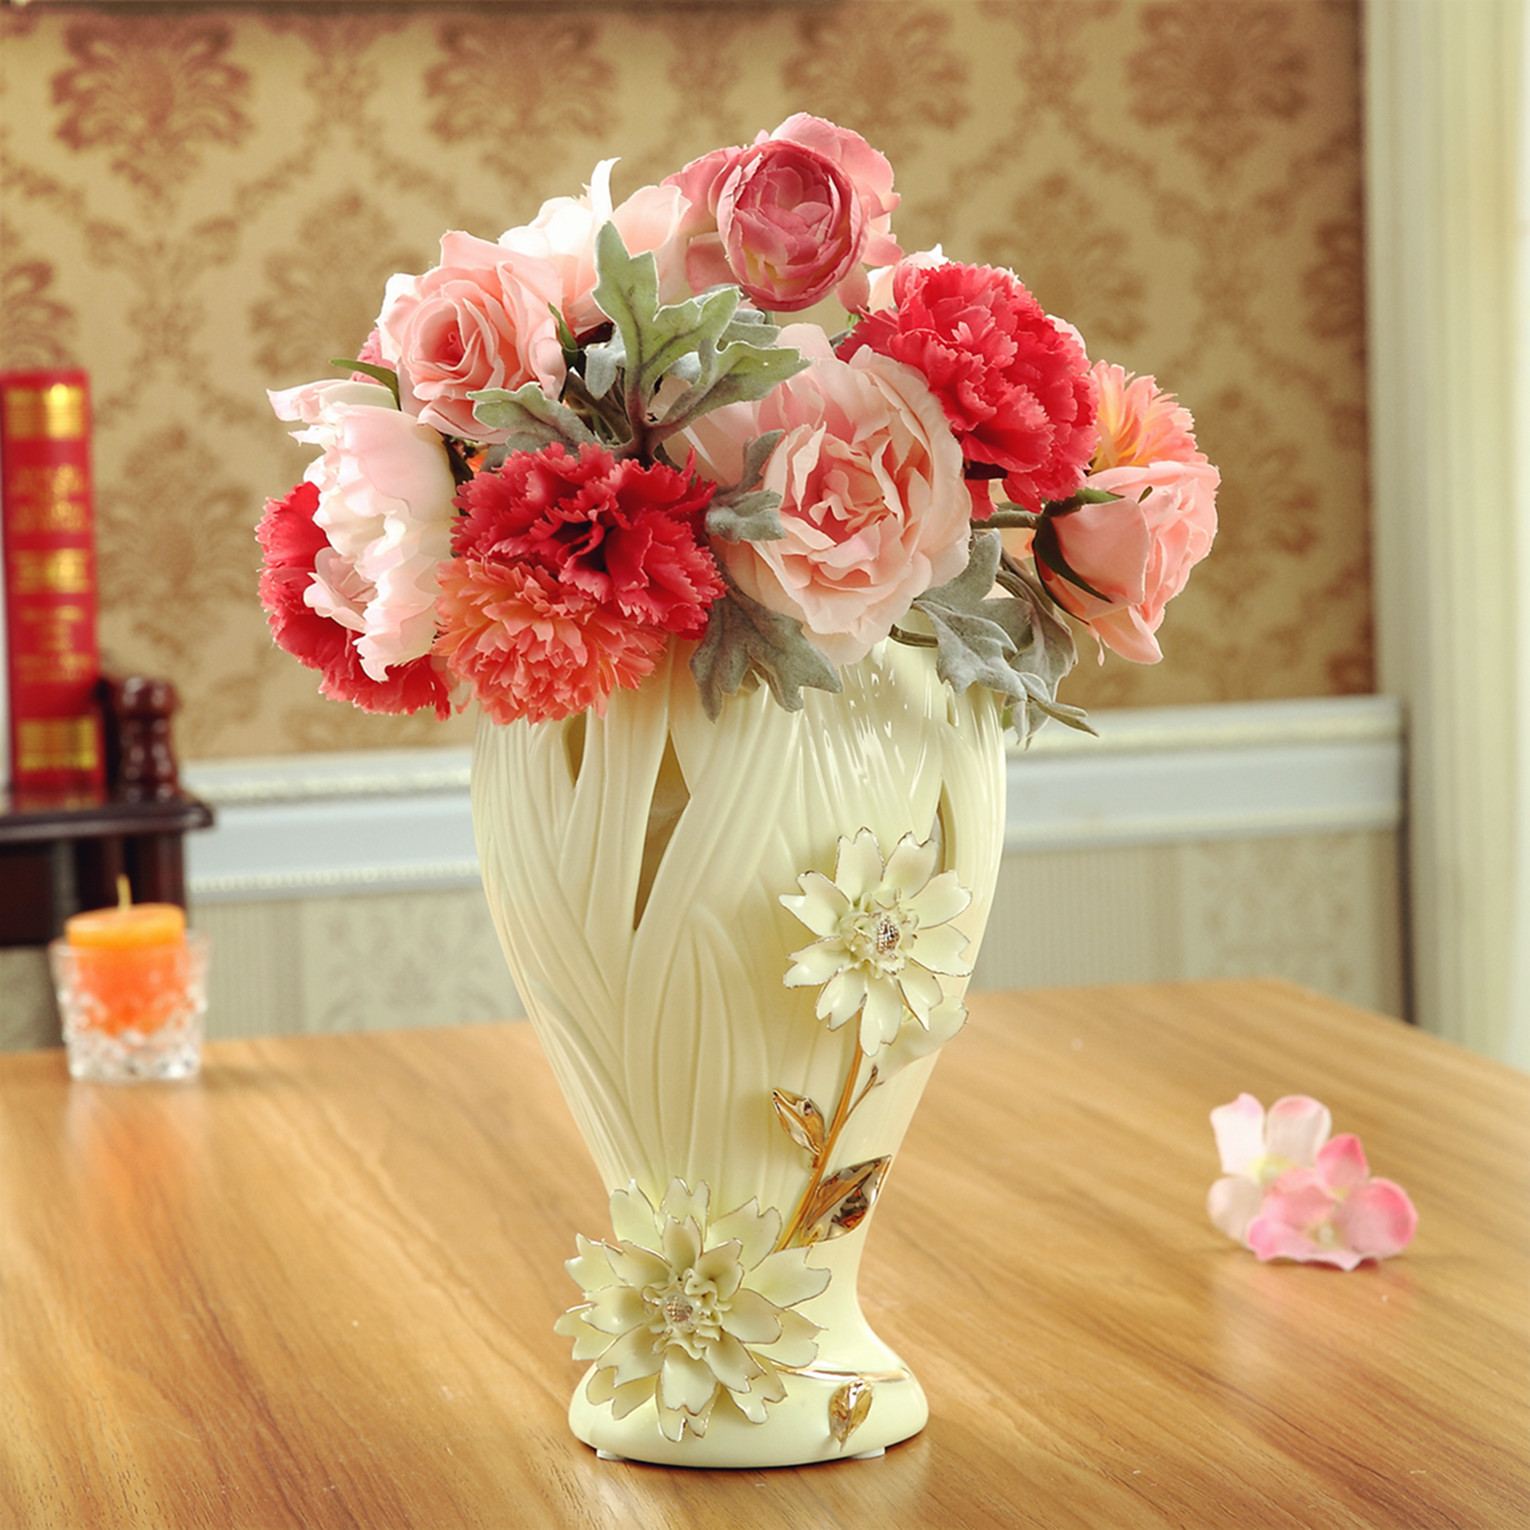 为什么客厅一定要有一款这样的花瓶,你知道吗?